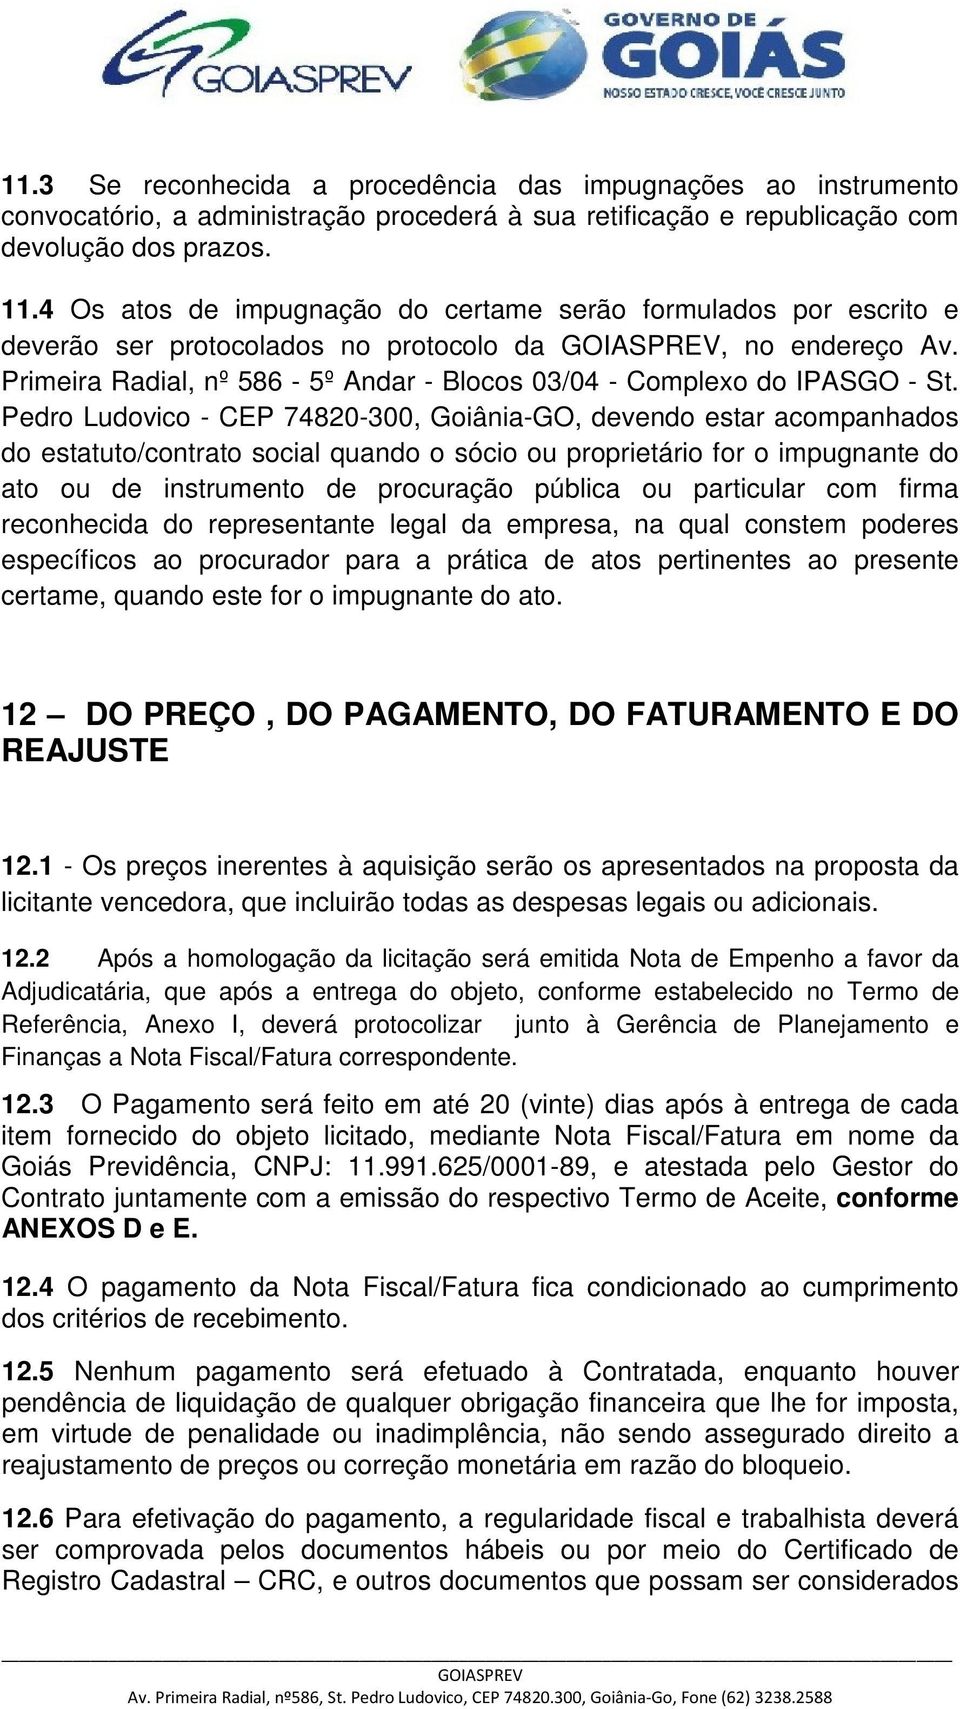 Pedro Ludovico - CEP 74820-300, Goiânia-GO, devendo estar acompanhados do estatuto/contrato social quando o sócio ou proprietário for o impugnante do ato ou de instrumento de procuração pública ou